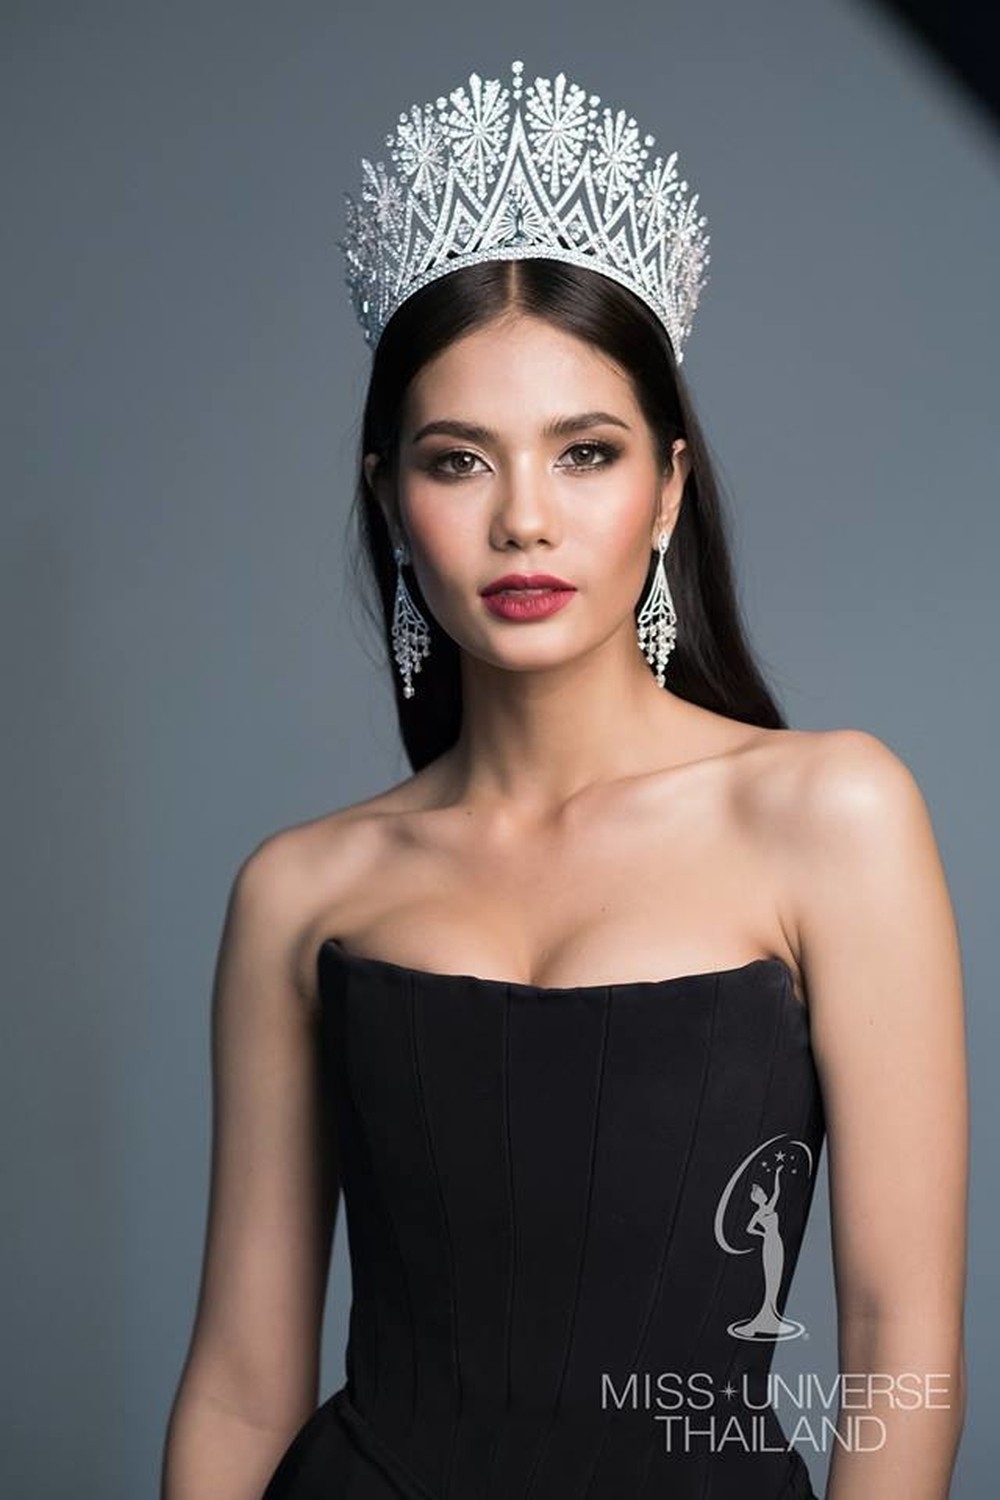 
Được biết, Chalita Suansane là người đẹp có tầm ảnh hưởng rất lớn đến giới Hoa hậu, người đẹp tại đất nước này. Cô cũng từng lọt vào Top 6 chung cuộc của Miss Universe 2016 được tổ chức ở Philippines.​